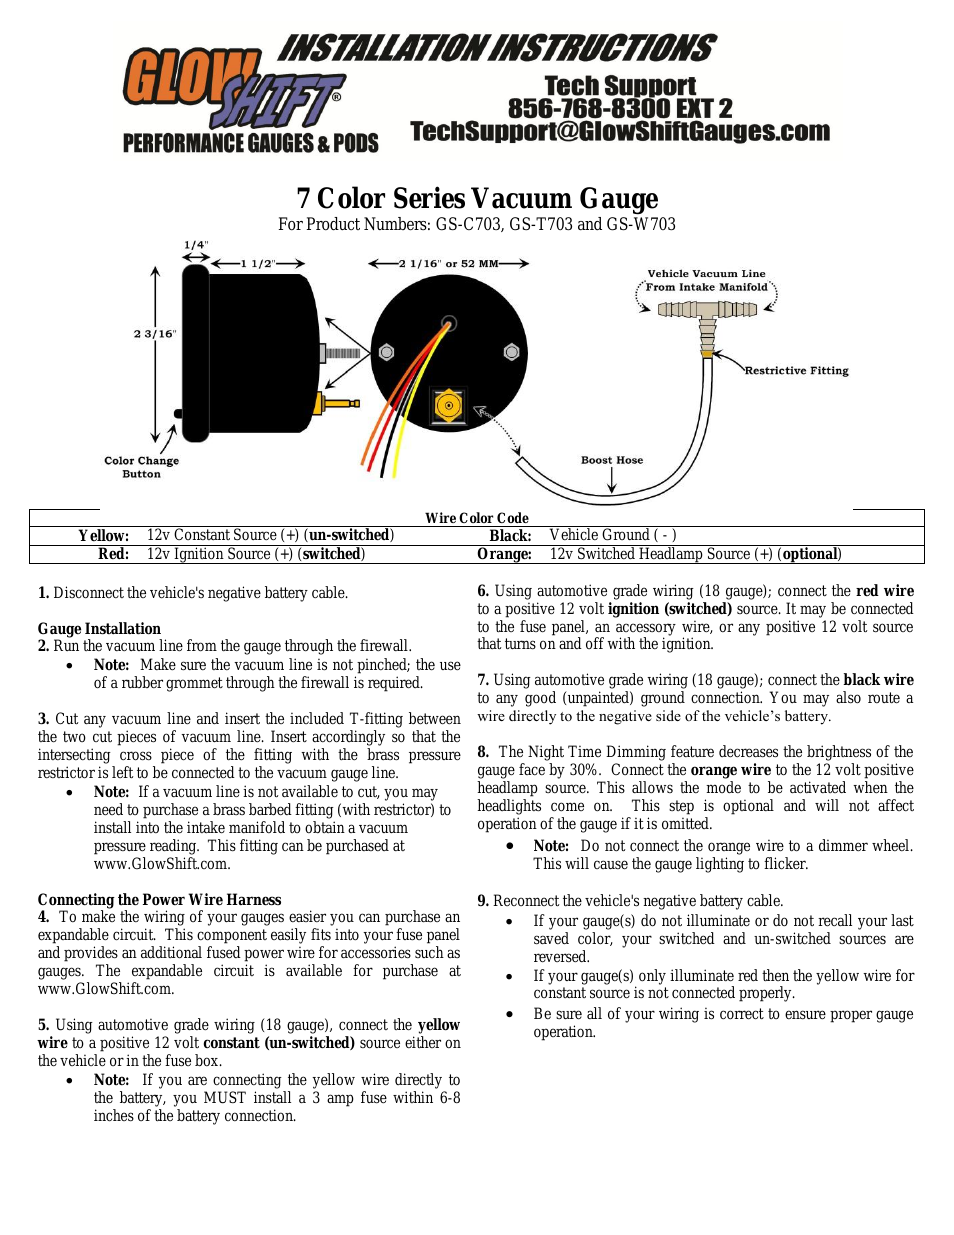 7 Color Series Vacuum Gauge